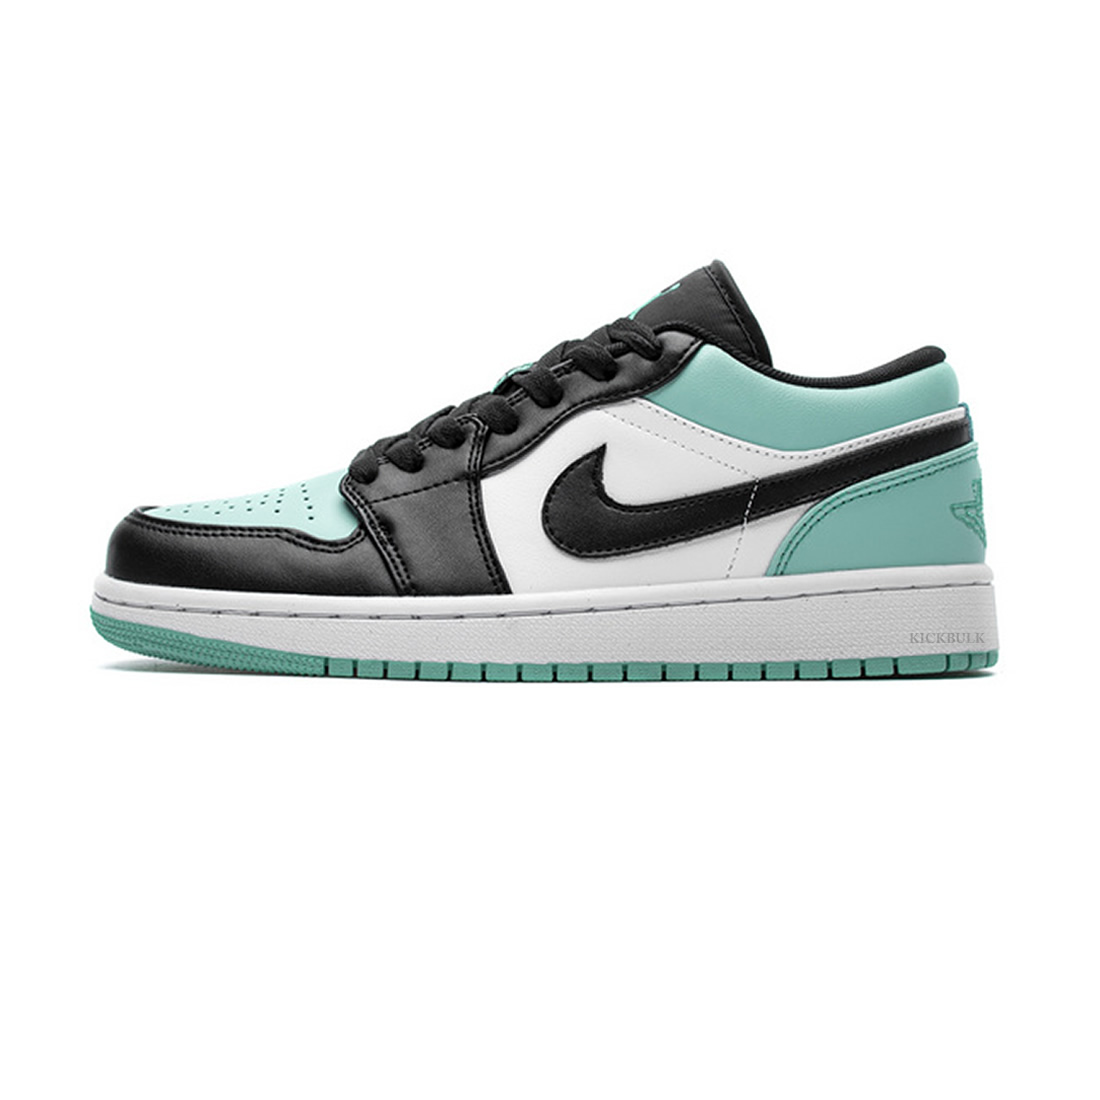 Nike Air Jordan 1 Low Emerald Toe 553558 117 1 - www.kickbulk.org